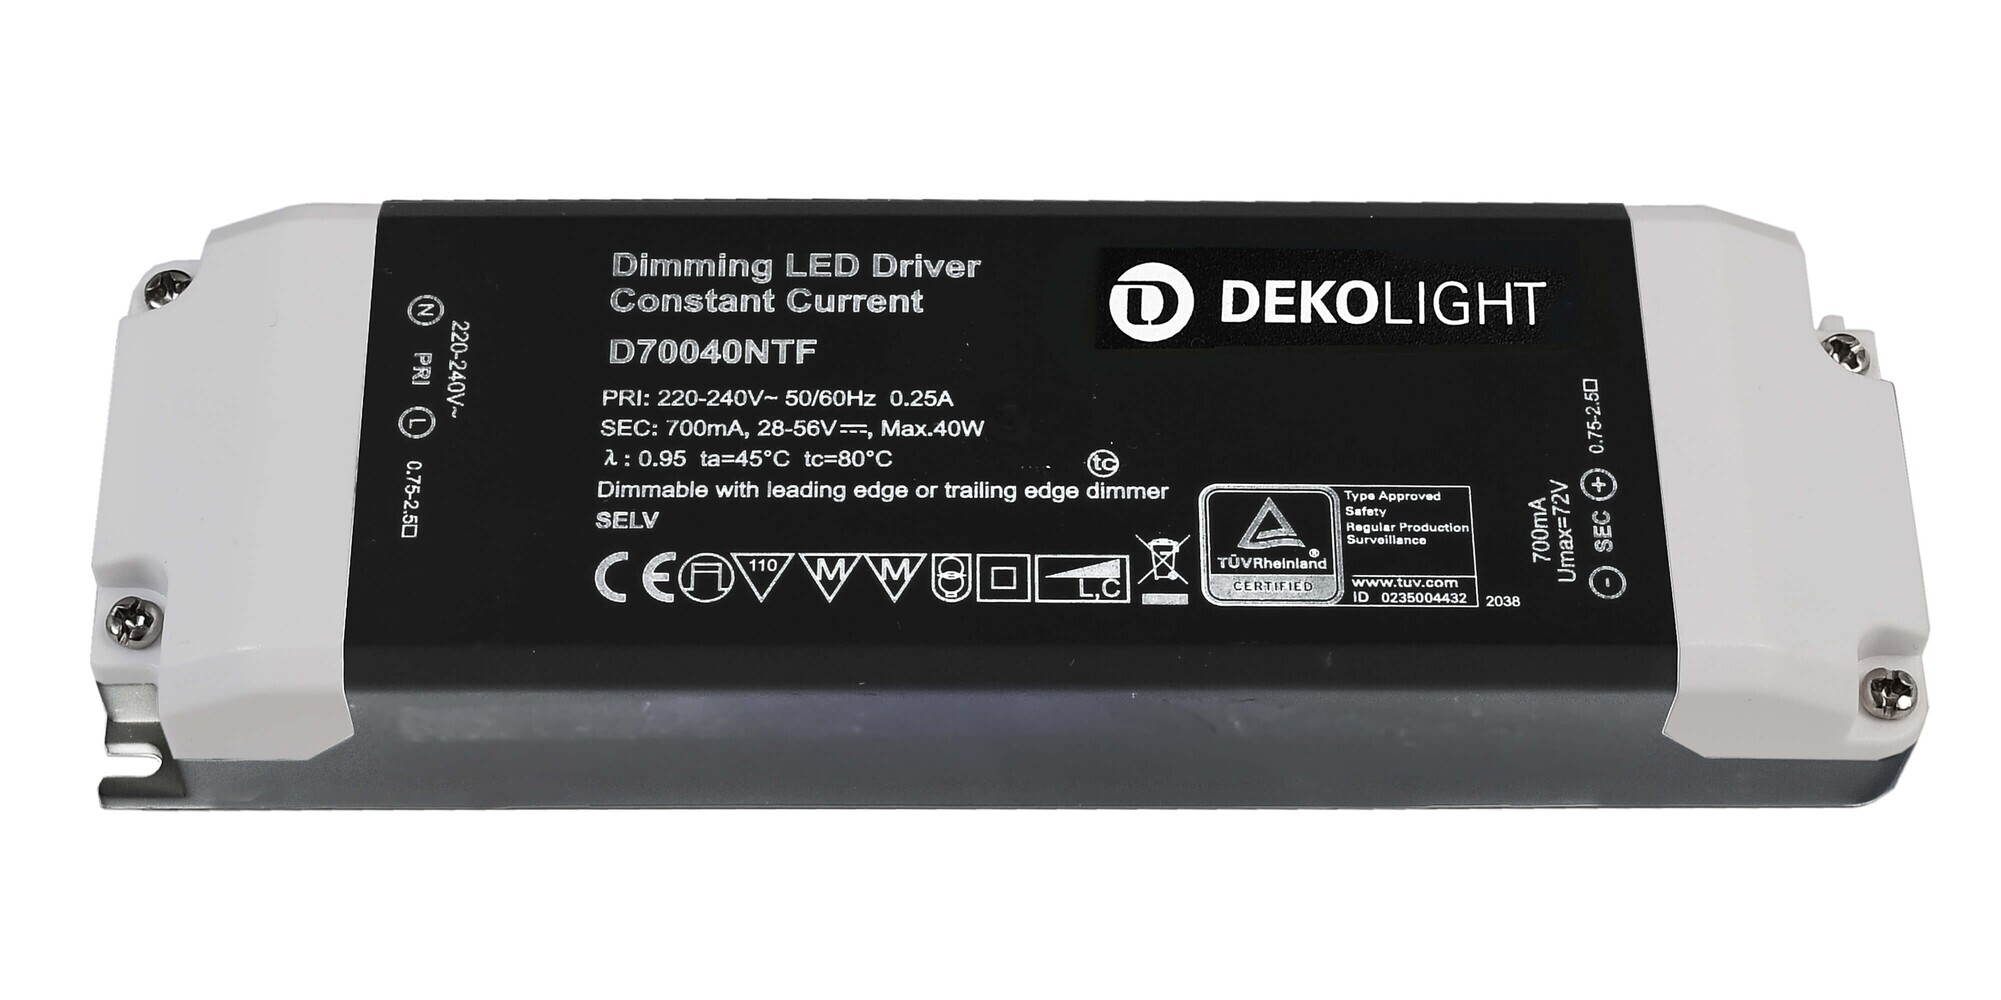 Ein hochwertiges und langlebiges LED Netzgerät von der Marke Deko-Light